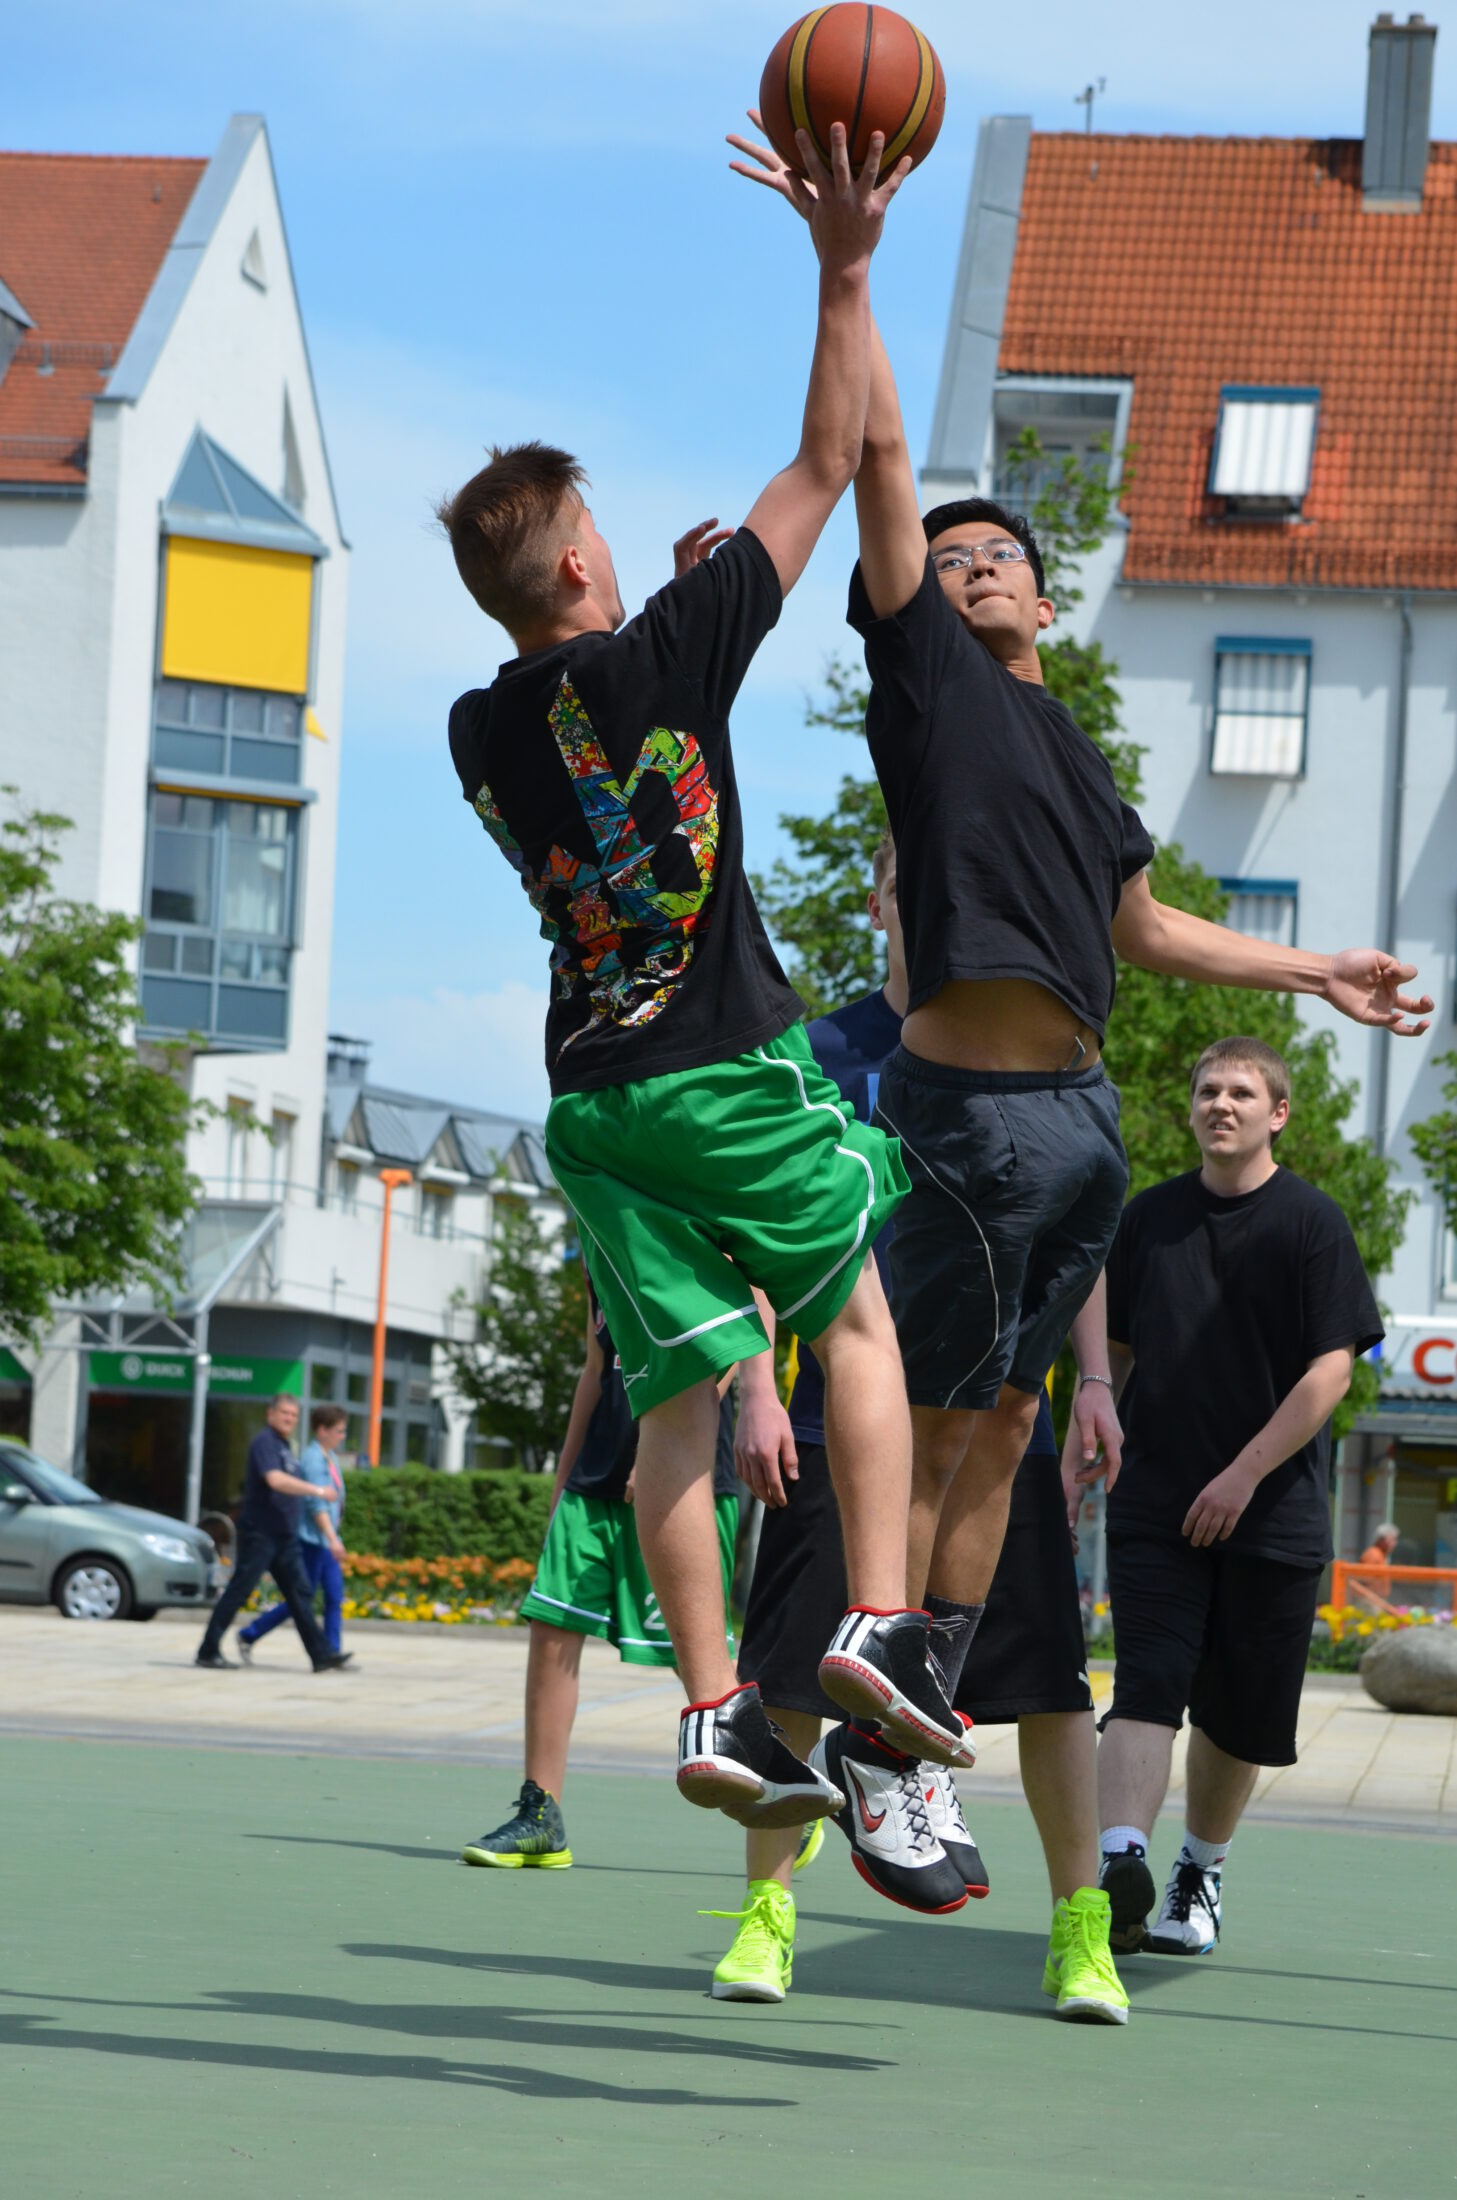 Streetballturnier der Jugend am Bürgerplatz